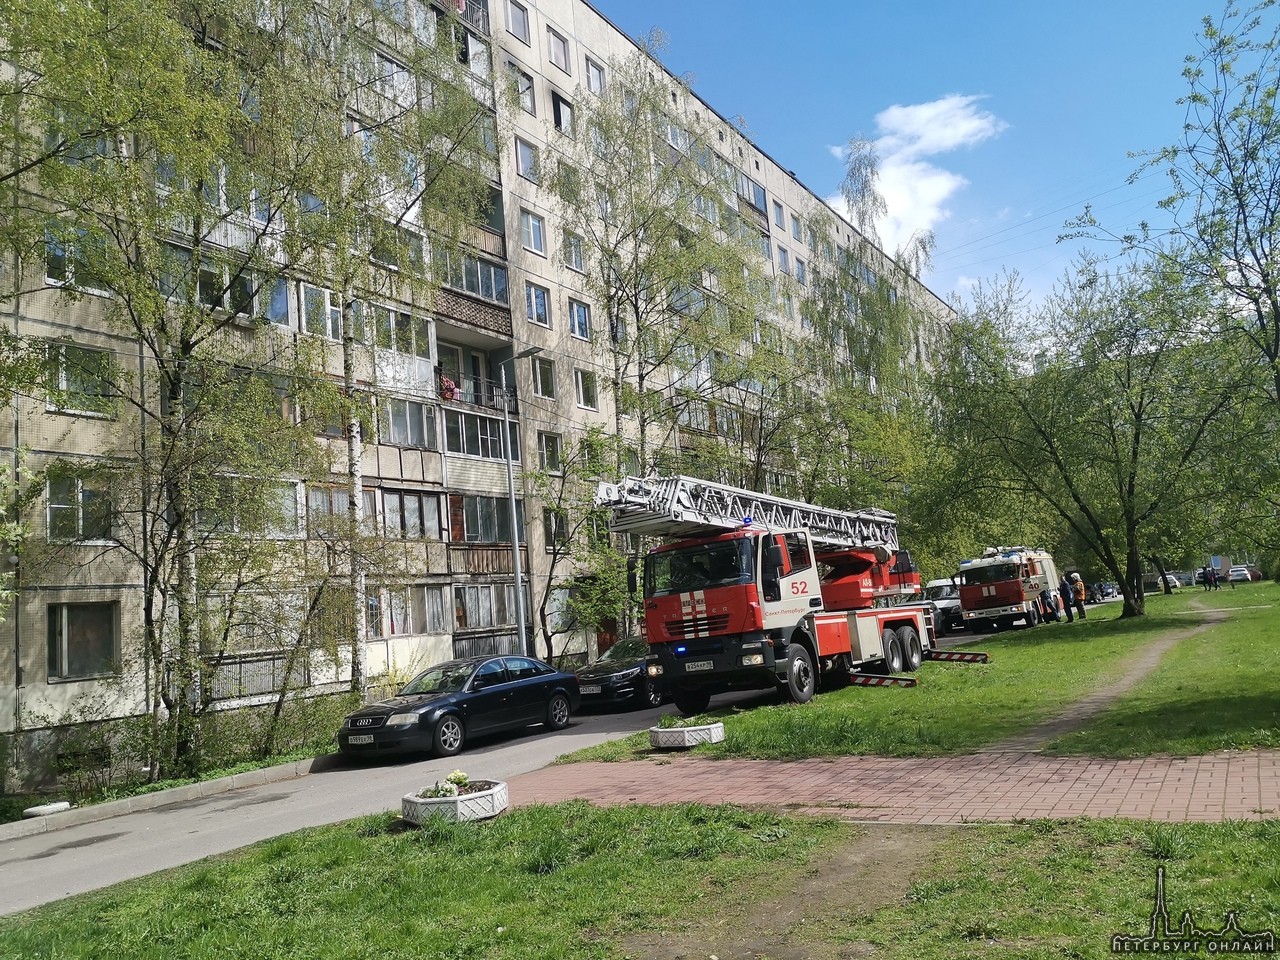 Пожар на Подвойского в доме 24 корпус 2. Горит 8 этаж